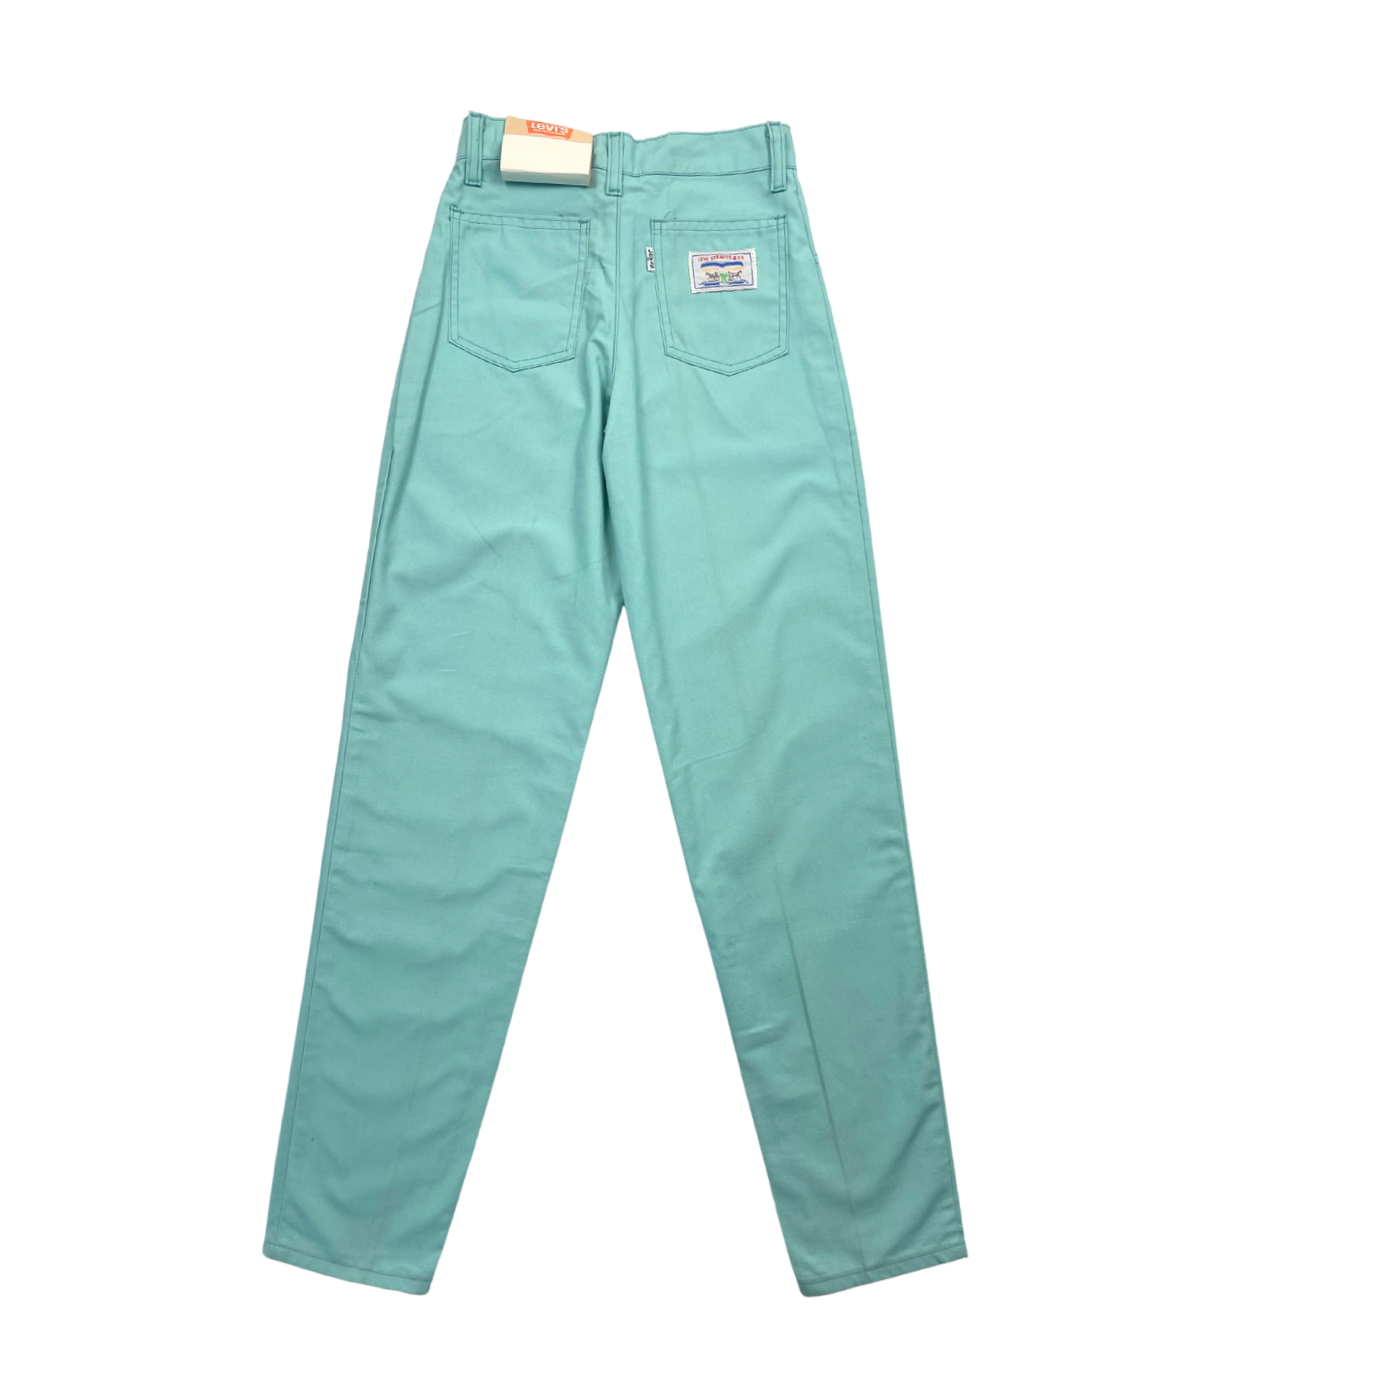 LEVI’S – Pantalon droit turquoise (neuf) – 11 ans